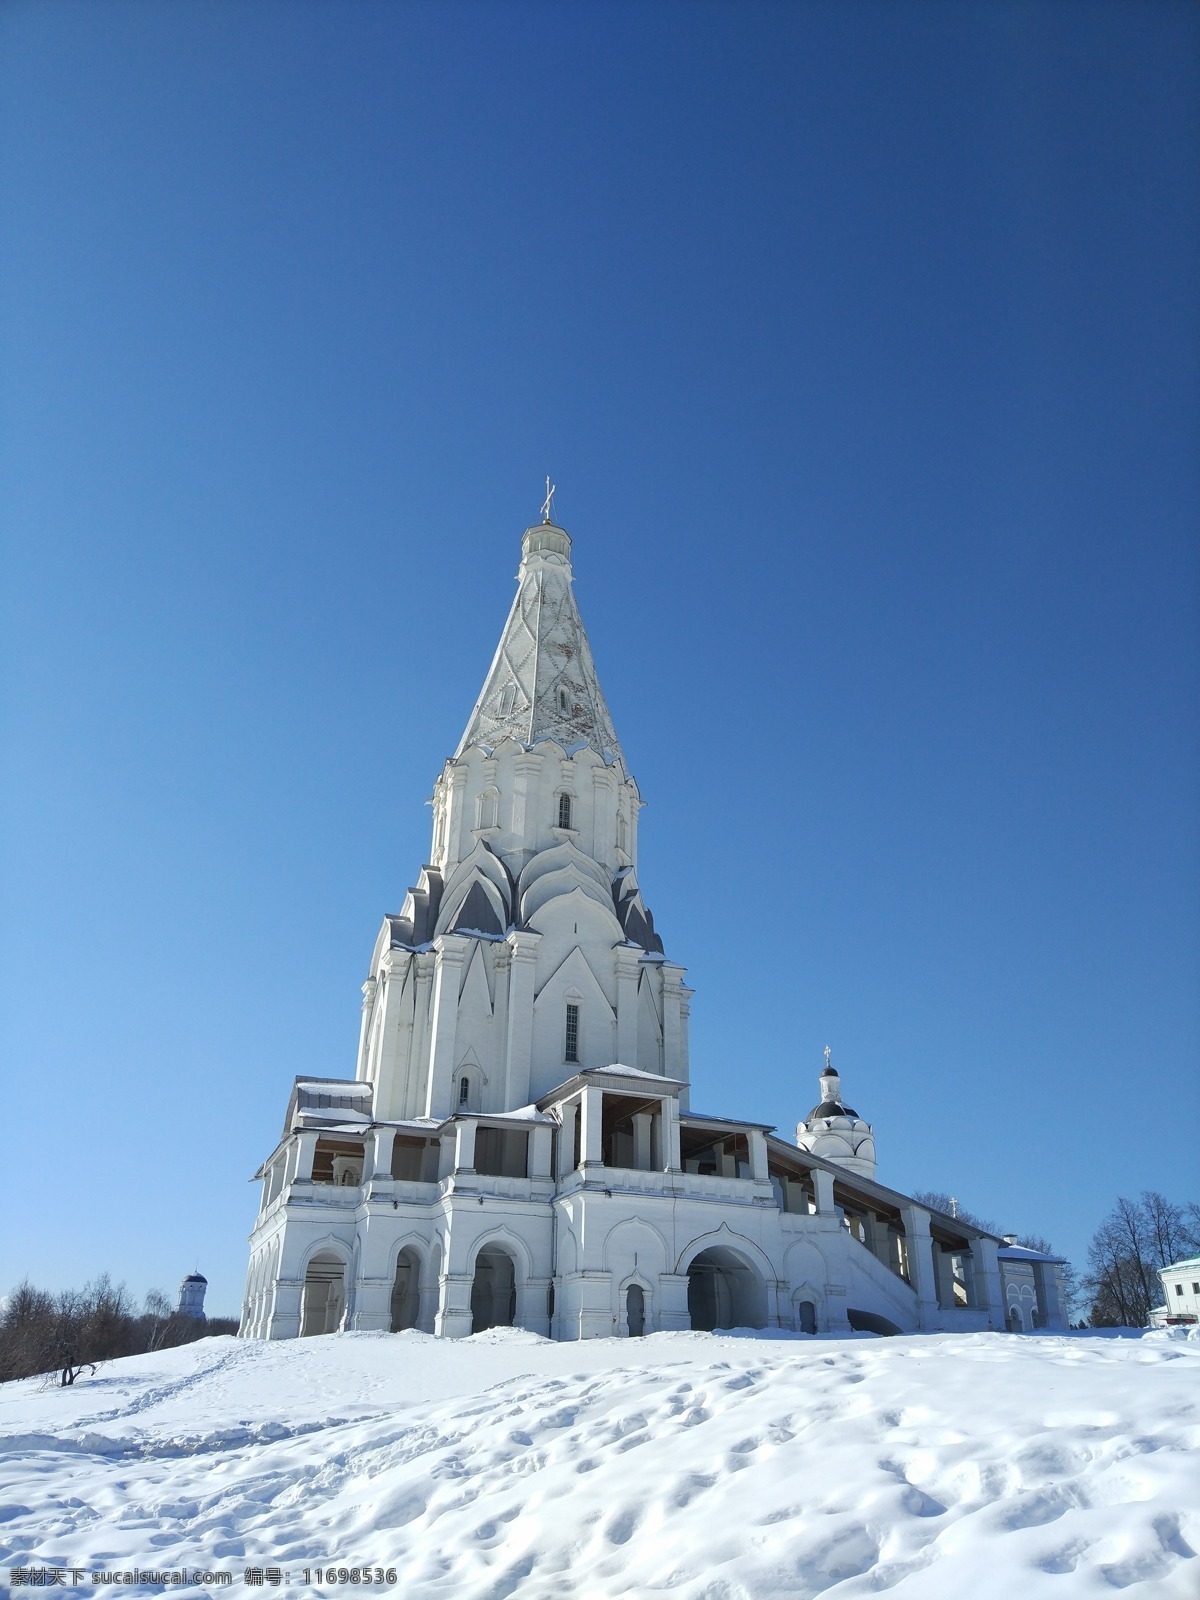 俄罗斯教堂 俄罗斯 教堂 风景 蓝色 白色 风景素材 旅游摄影 国内旅游